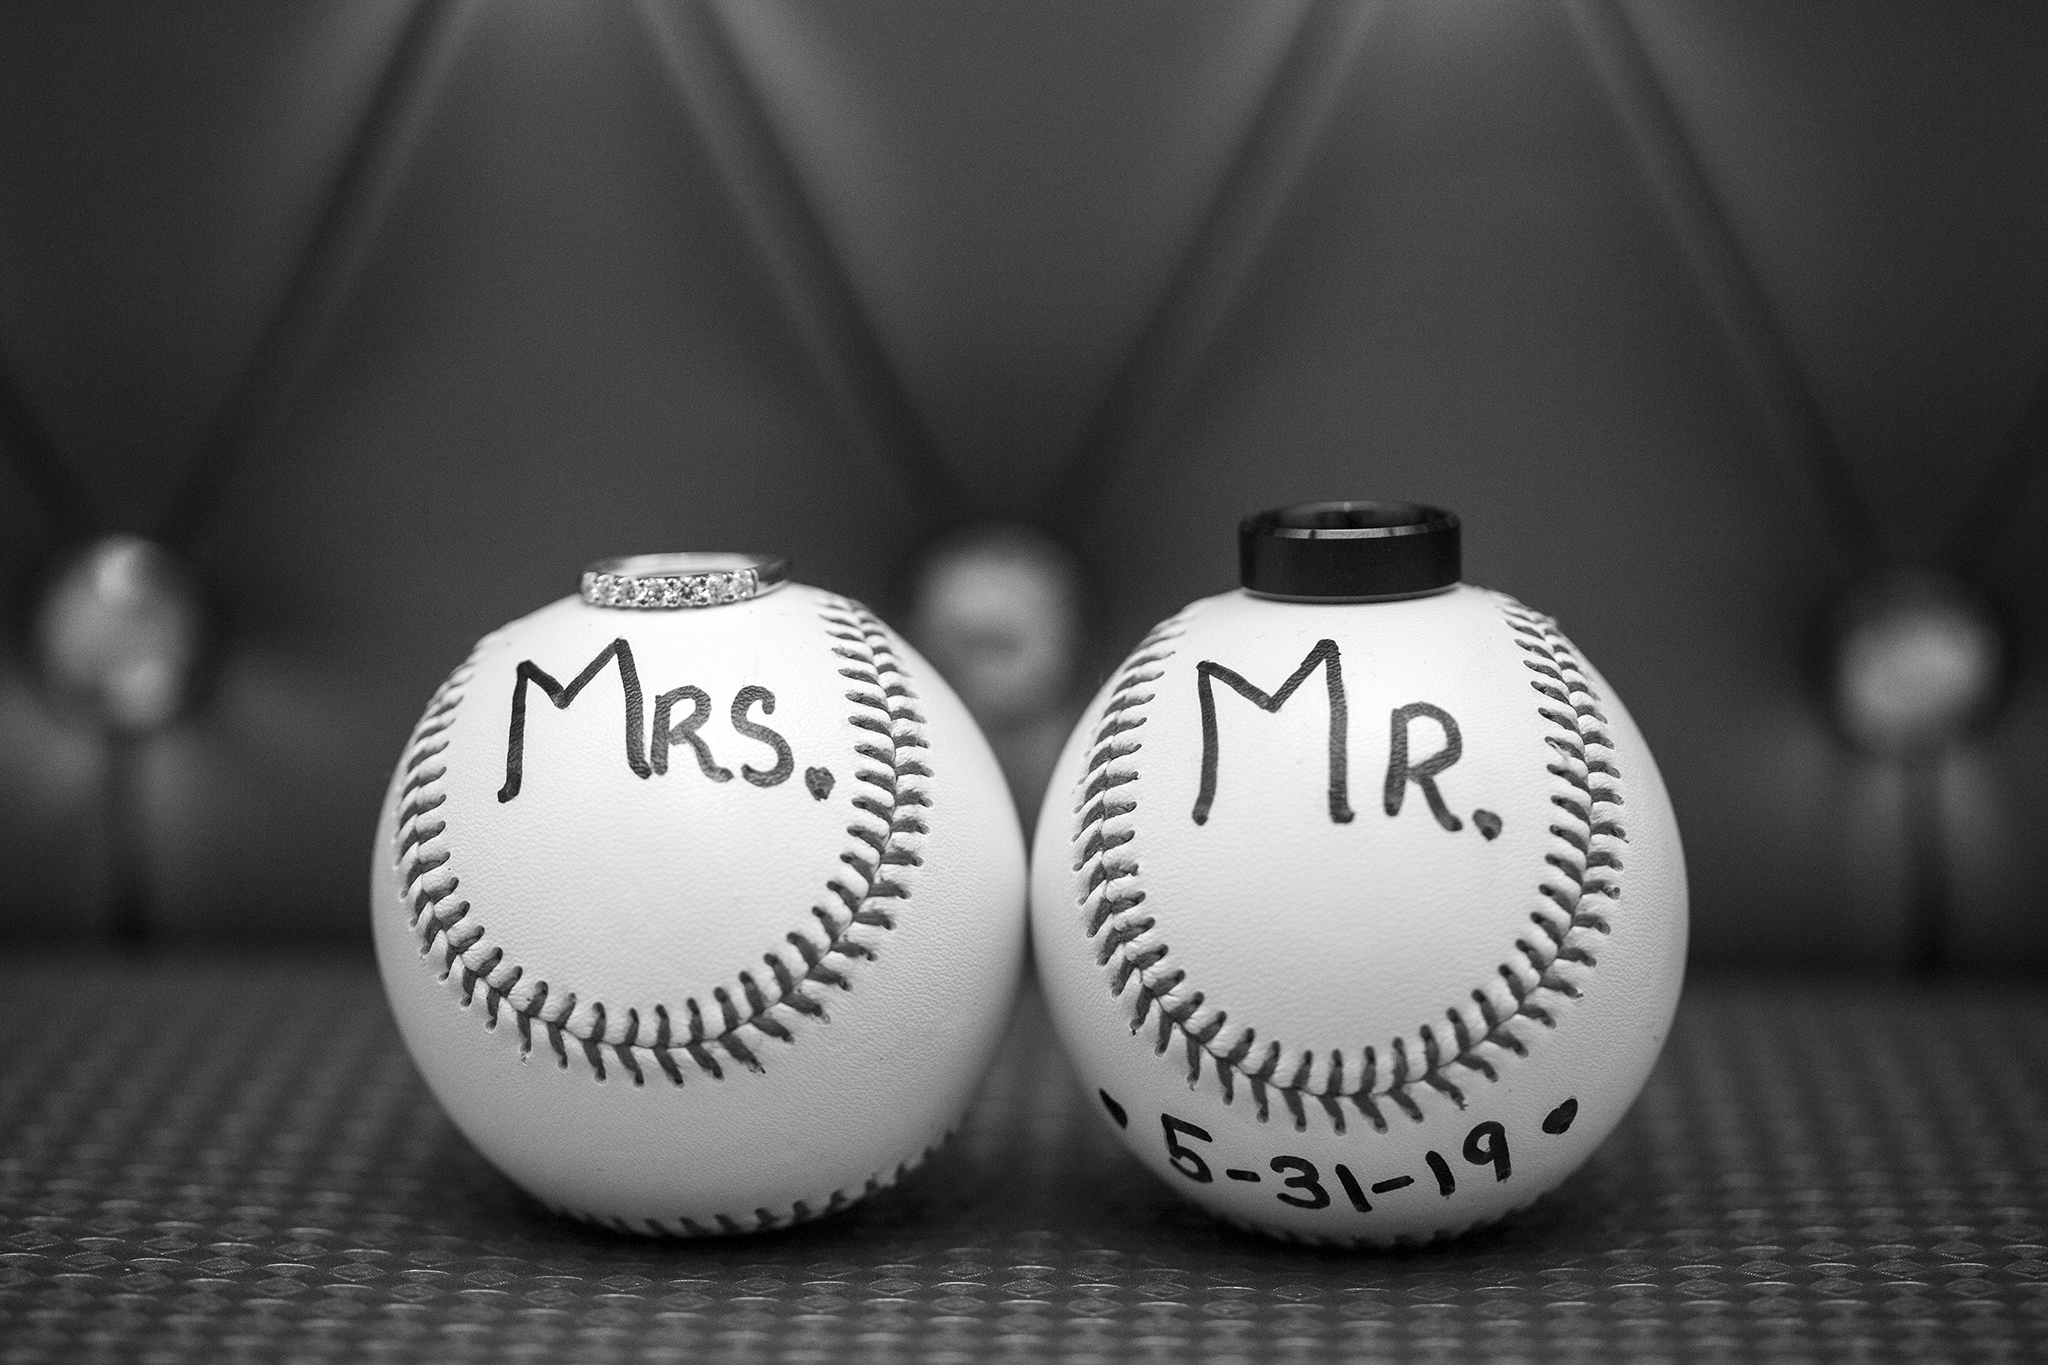 Baseball themed wedding photo at Kloc's Grove in Buffalo NY by Empire West Photo.